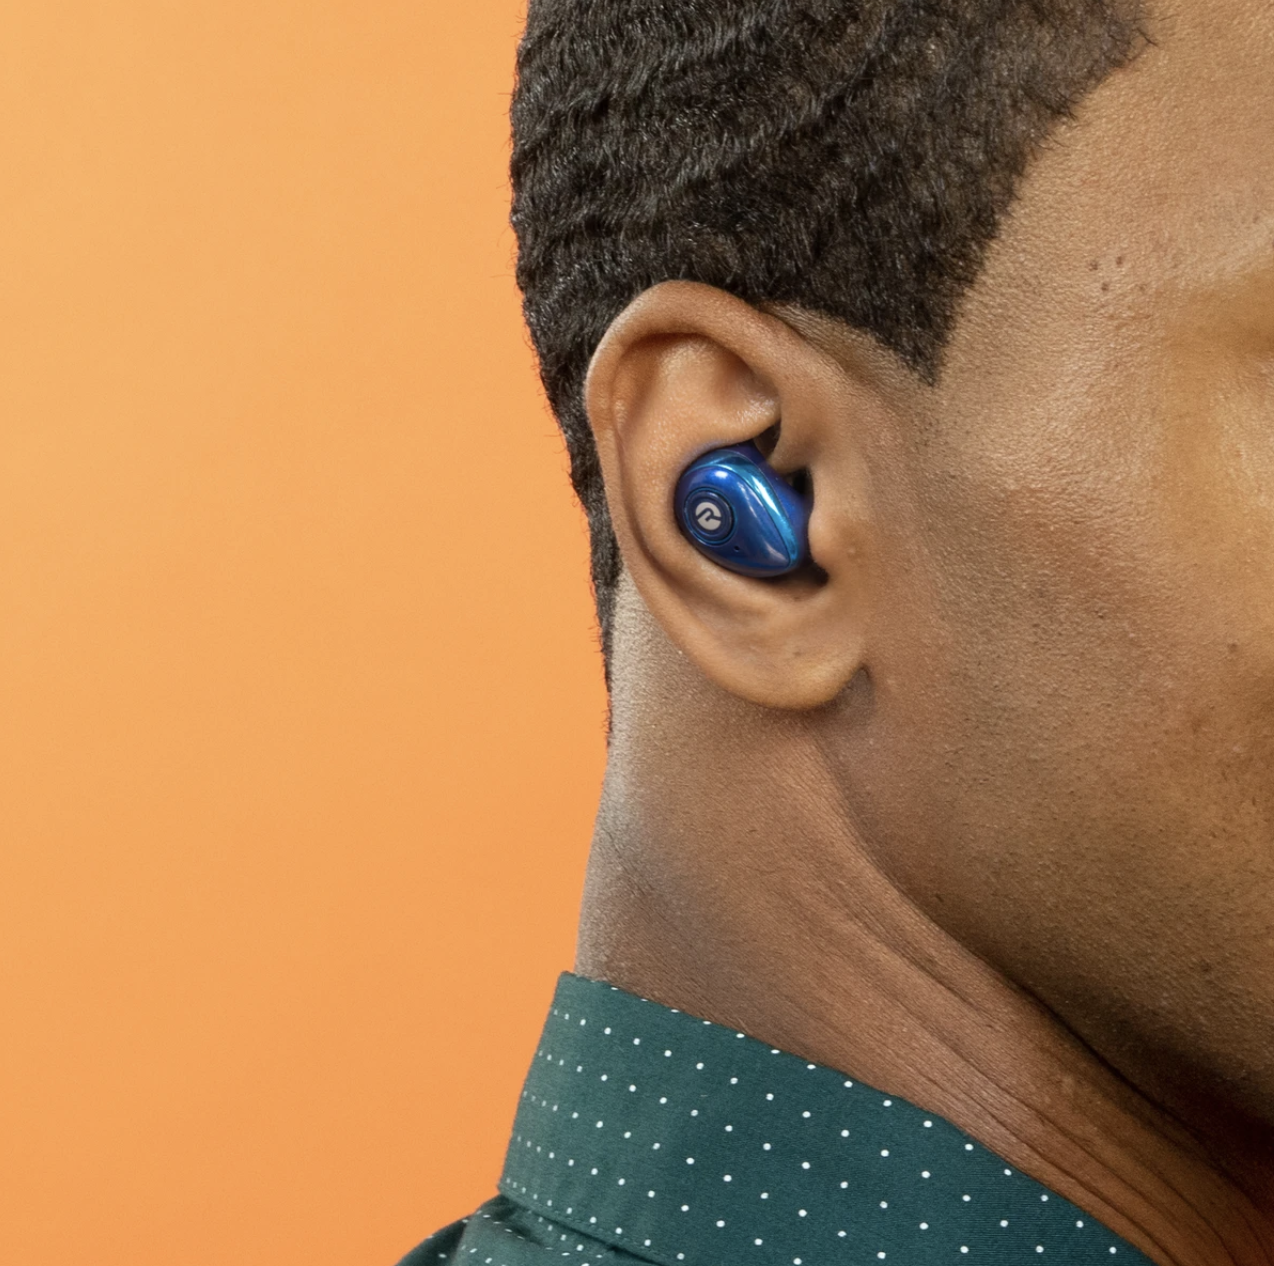 The small wireless earbud in blue in a model&#x27;s ear